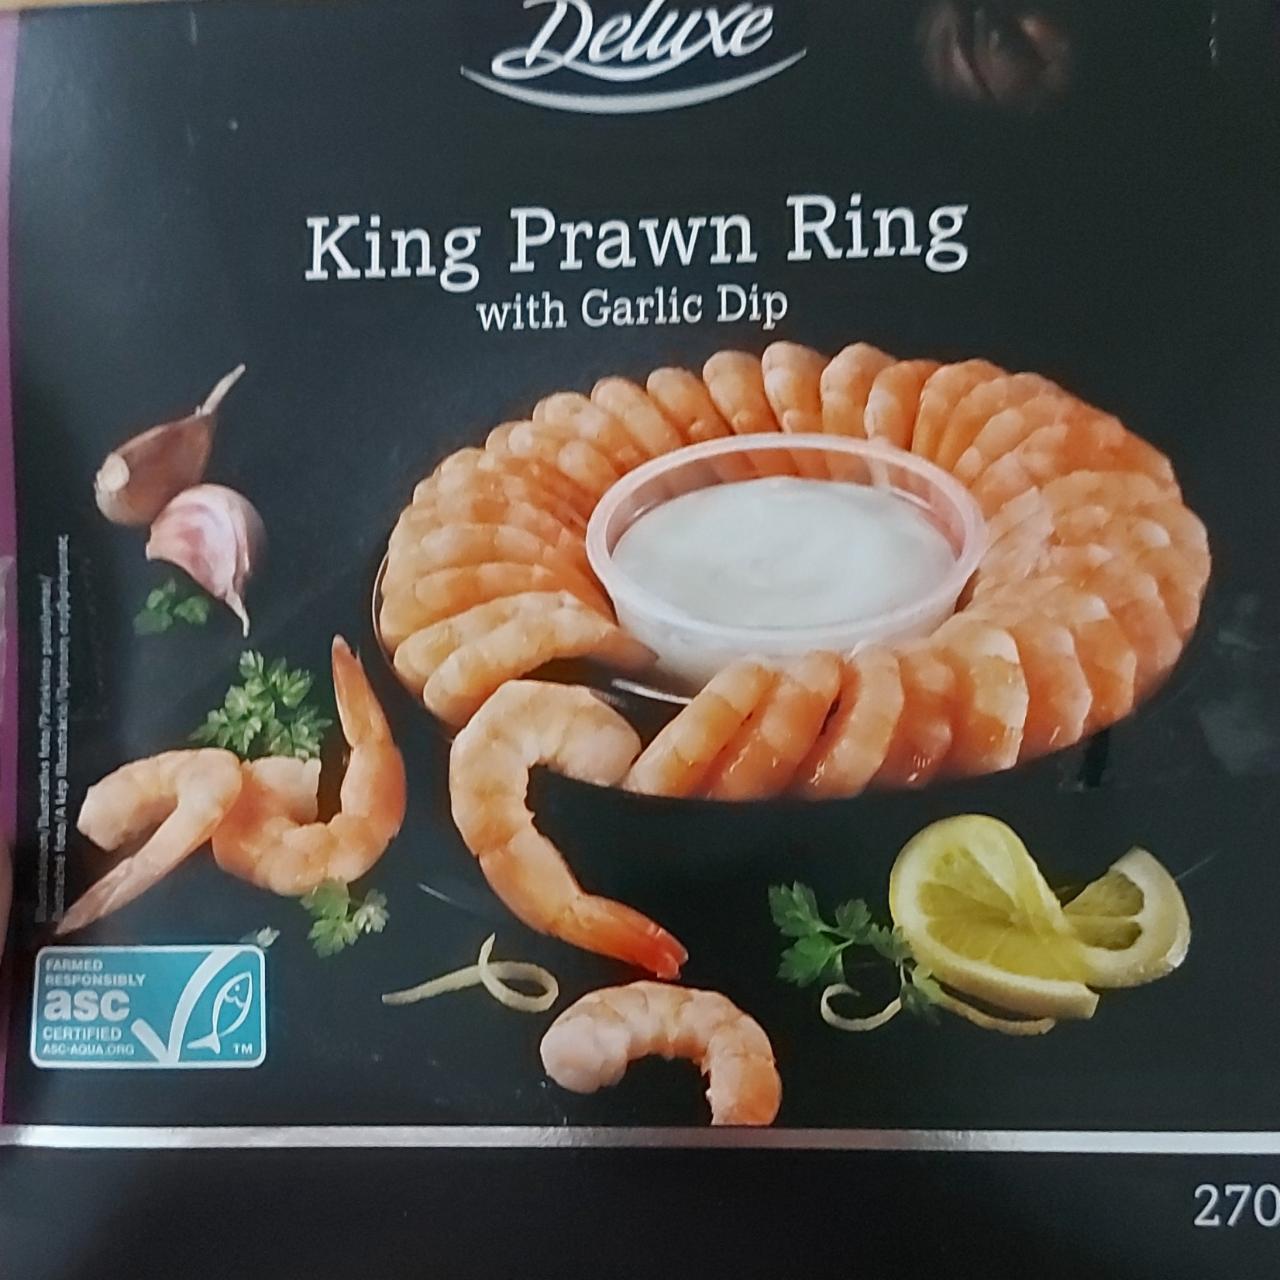 Fotografie - King Prawn Ring with Garlic Dip Deluxe